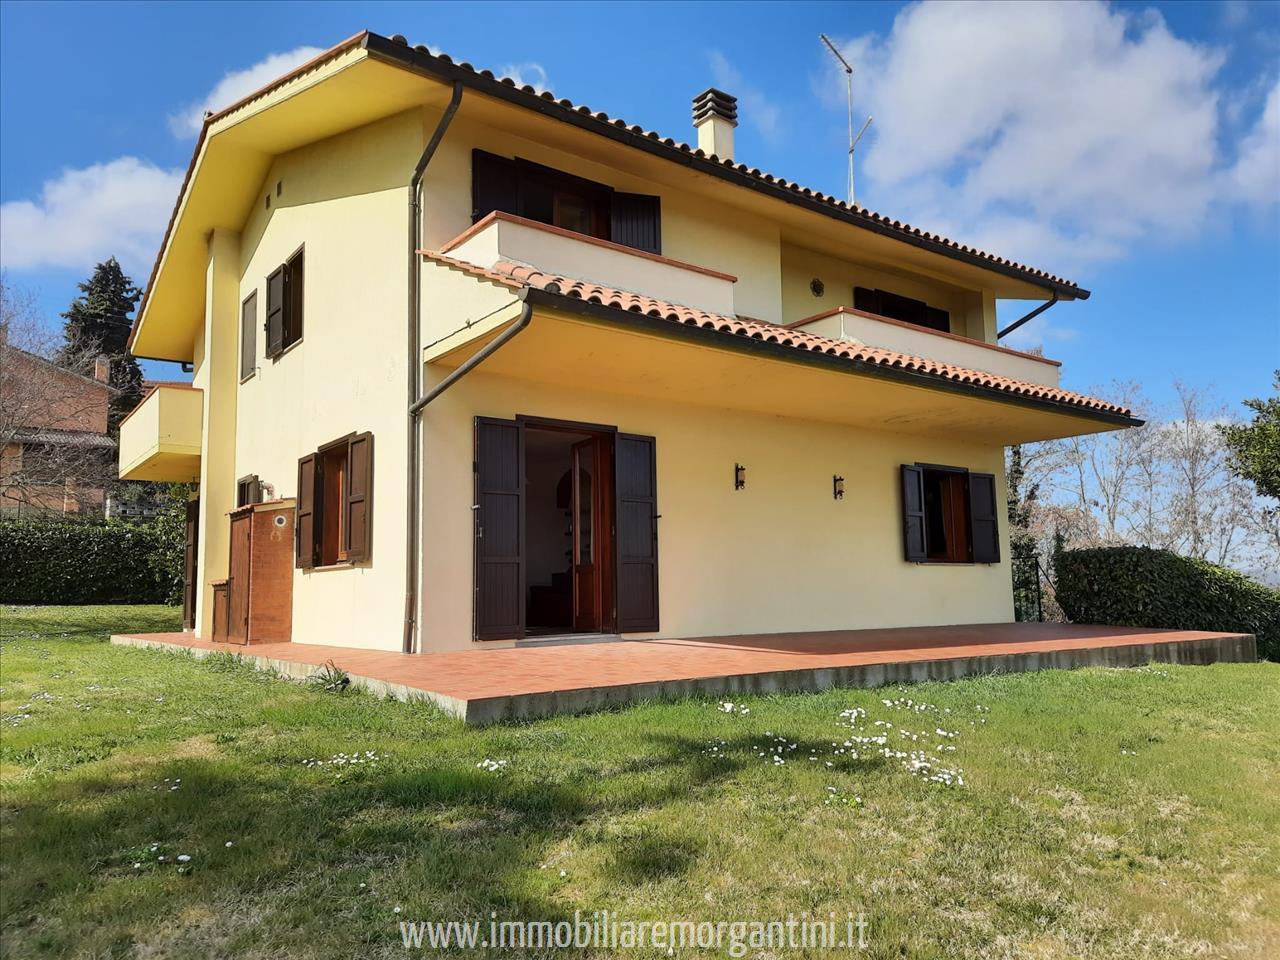 Villa in vendita a Sarteano, 3 locali, prezzo € 430.000 | PortaleAgenzieImmobiliari.it